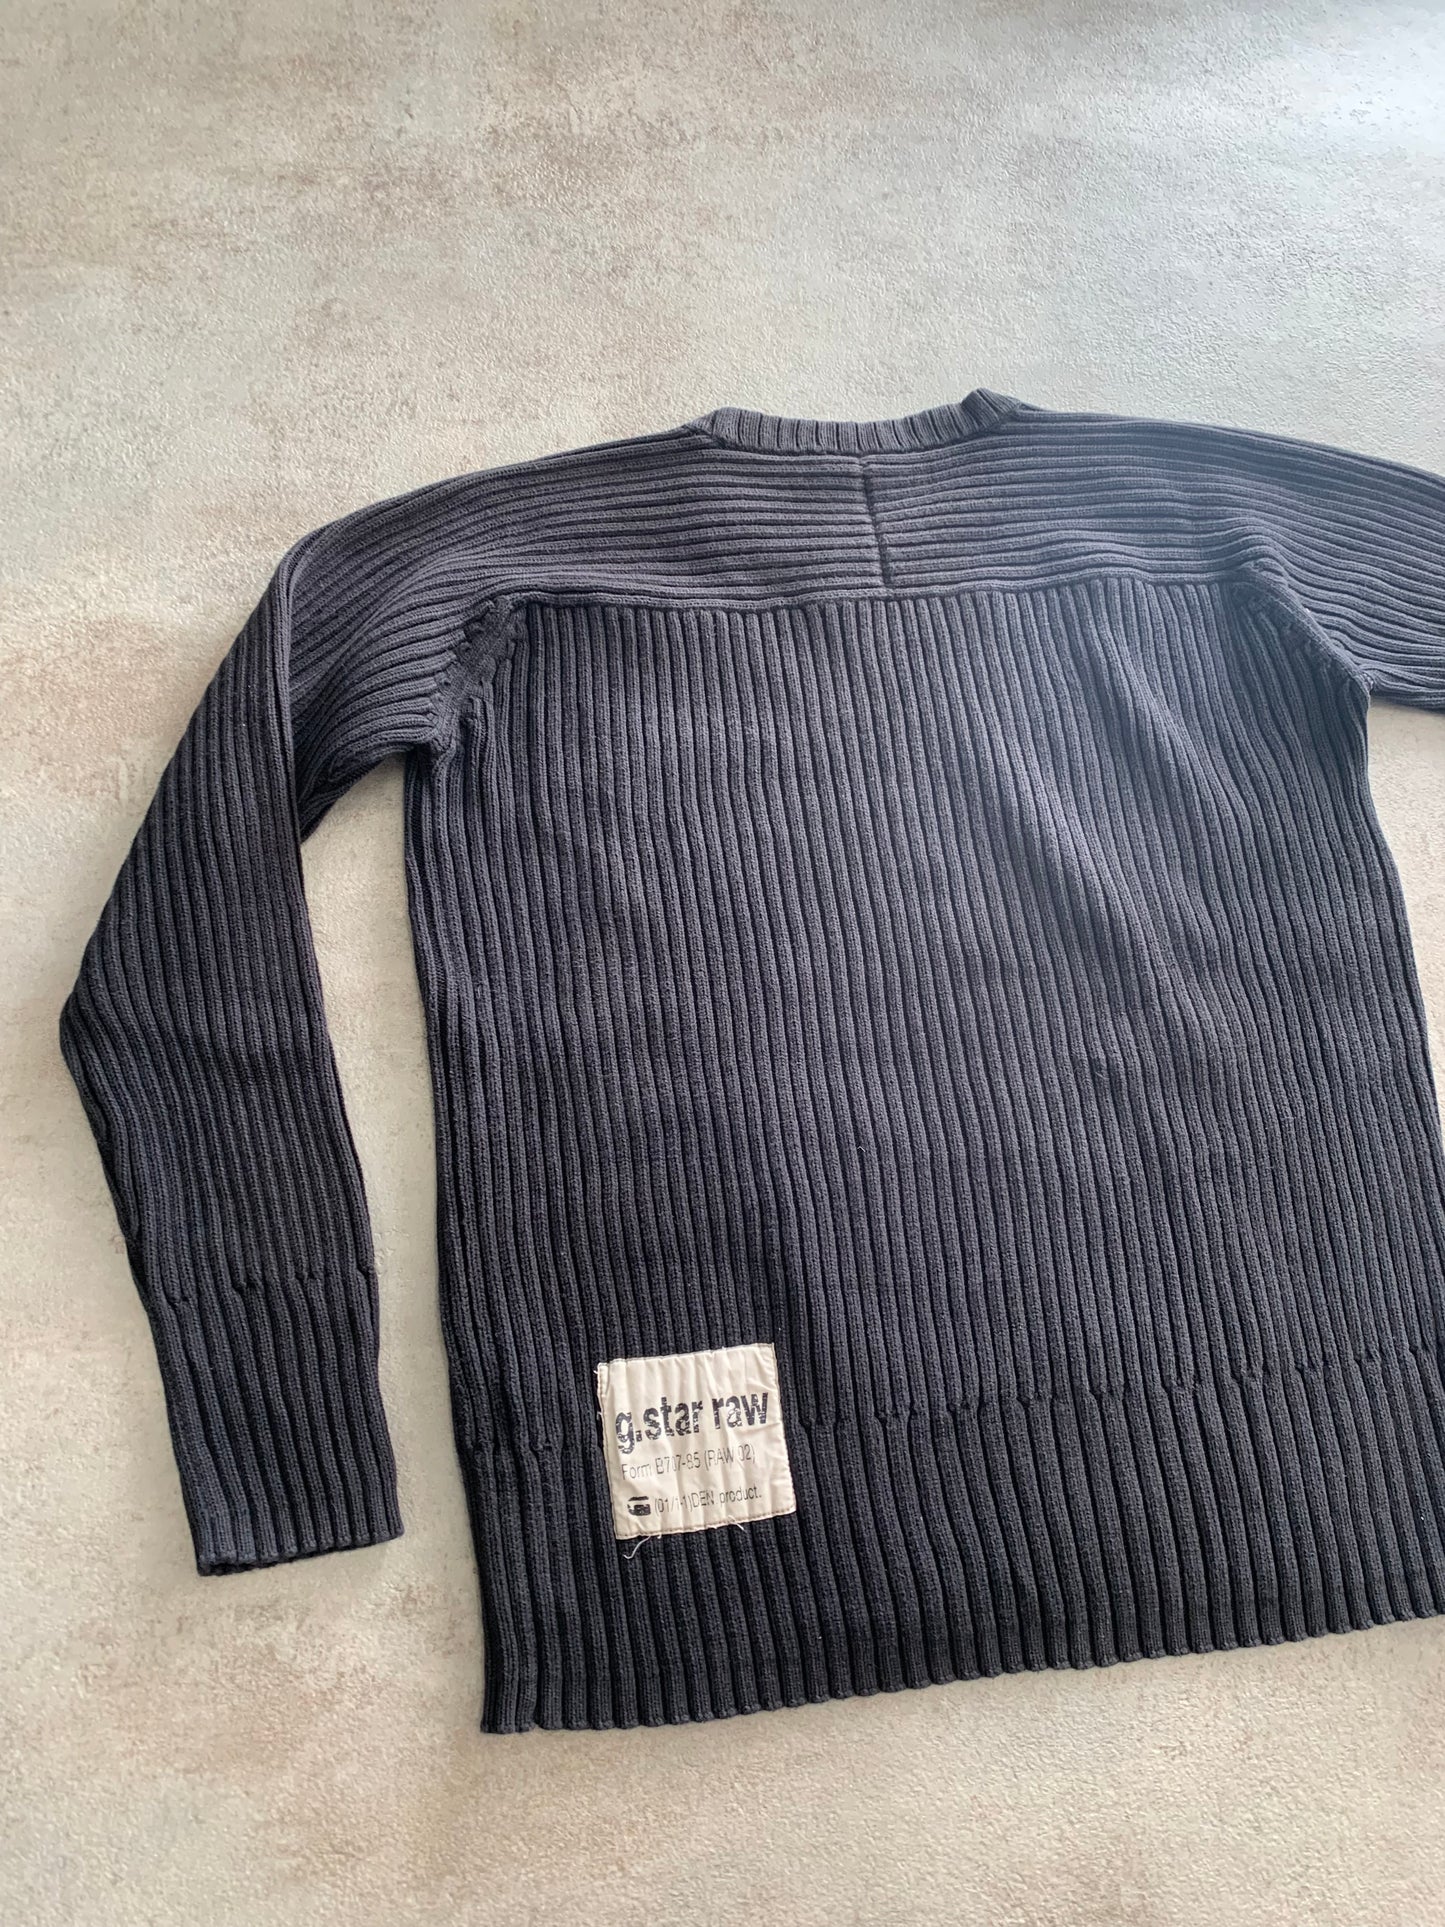 G-Star 00s Grunge Vintage Sweater - L